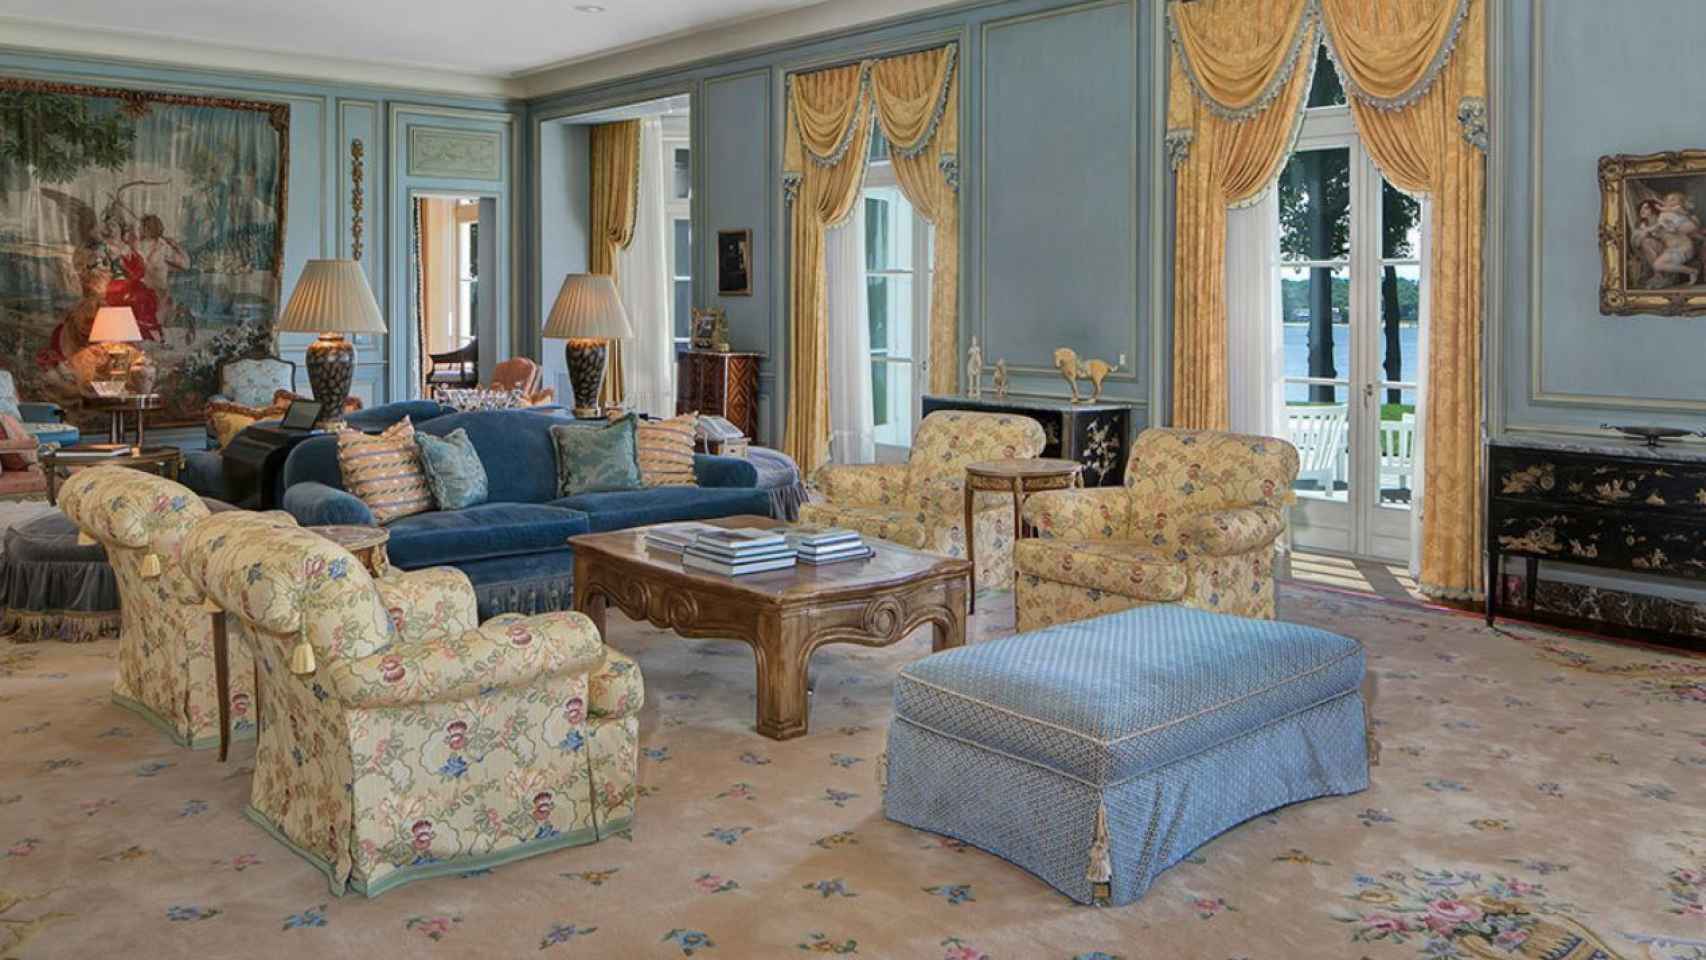 El interior de la casa está decorada con muebles de estilo francés.